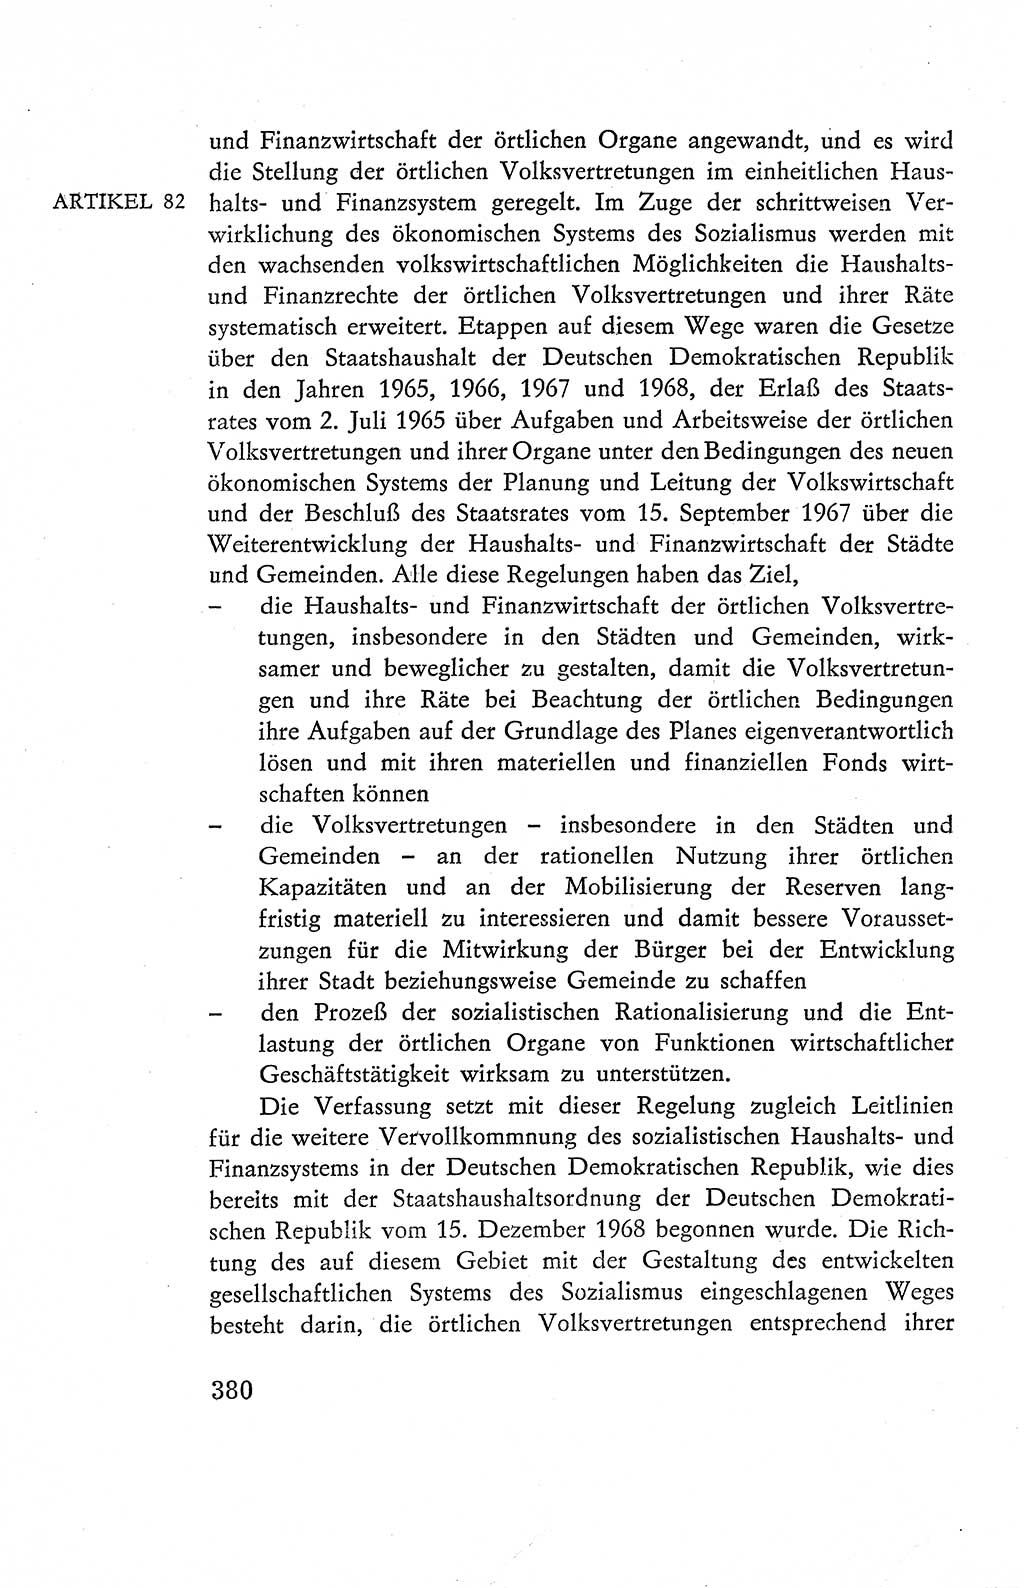 Verfassung der Deutschen Demokratischen Republik (DDR), Dokumente, Kommentar 1969, Band 2, Seite 380 (Verf. DDR Dok. Komm. 1969, Bd. 2, S. 380)